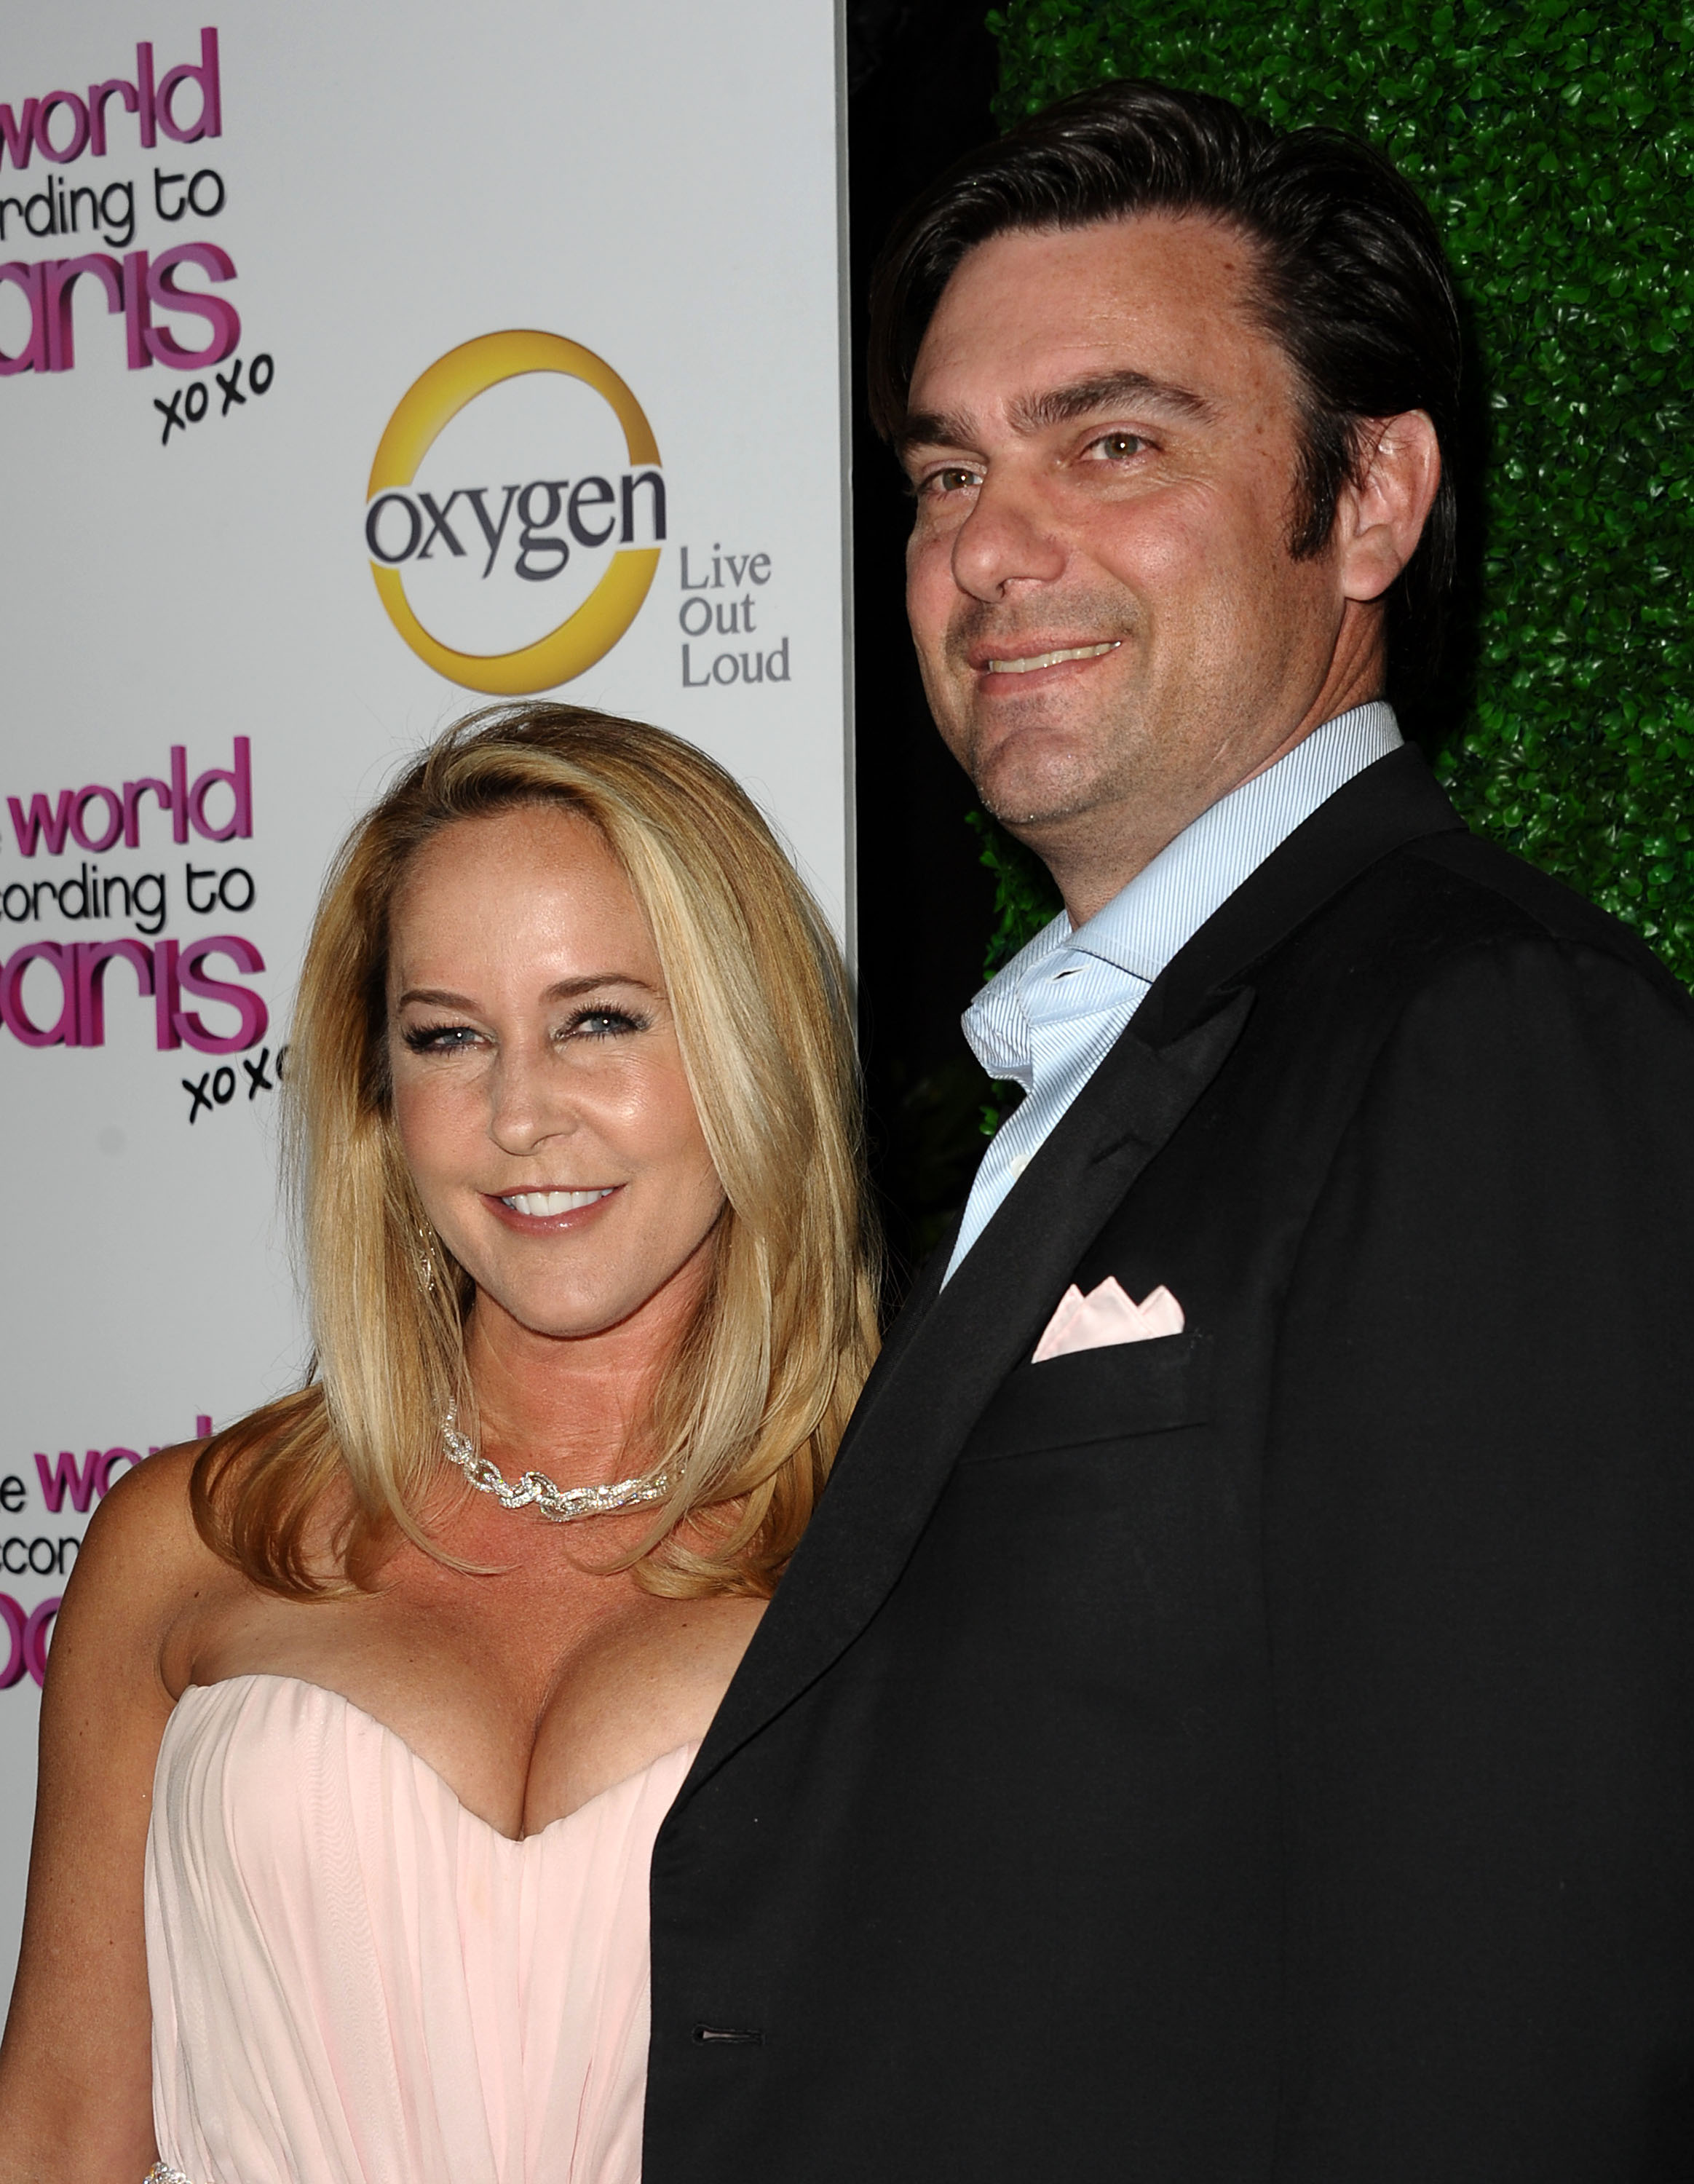 Erin Murphy et son mari Darren Dunckel à la soirée de présentation de "The World According To Paris" d'Oxygen le 17 mai 2011 à Hollywood, Californie | Source : Getty Images